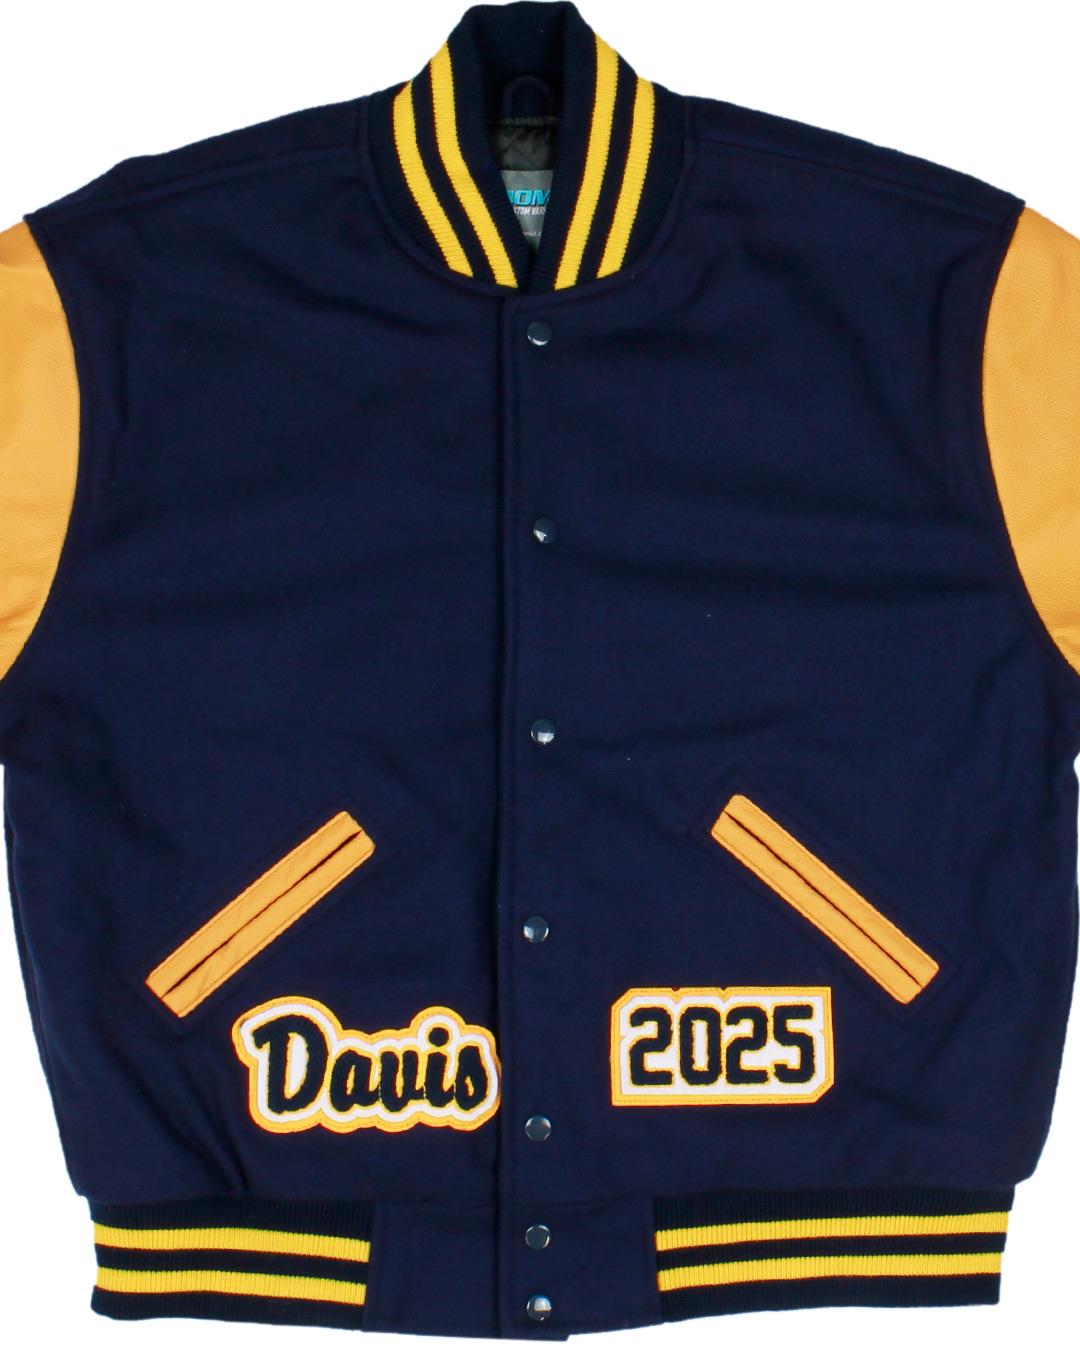 Greybull High School Varsity Jacket, Greybull, WY - Front